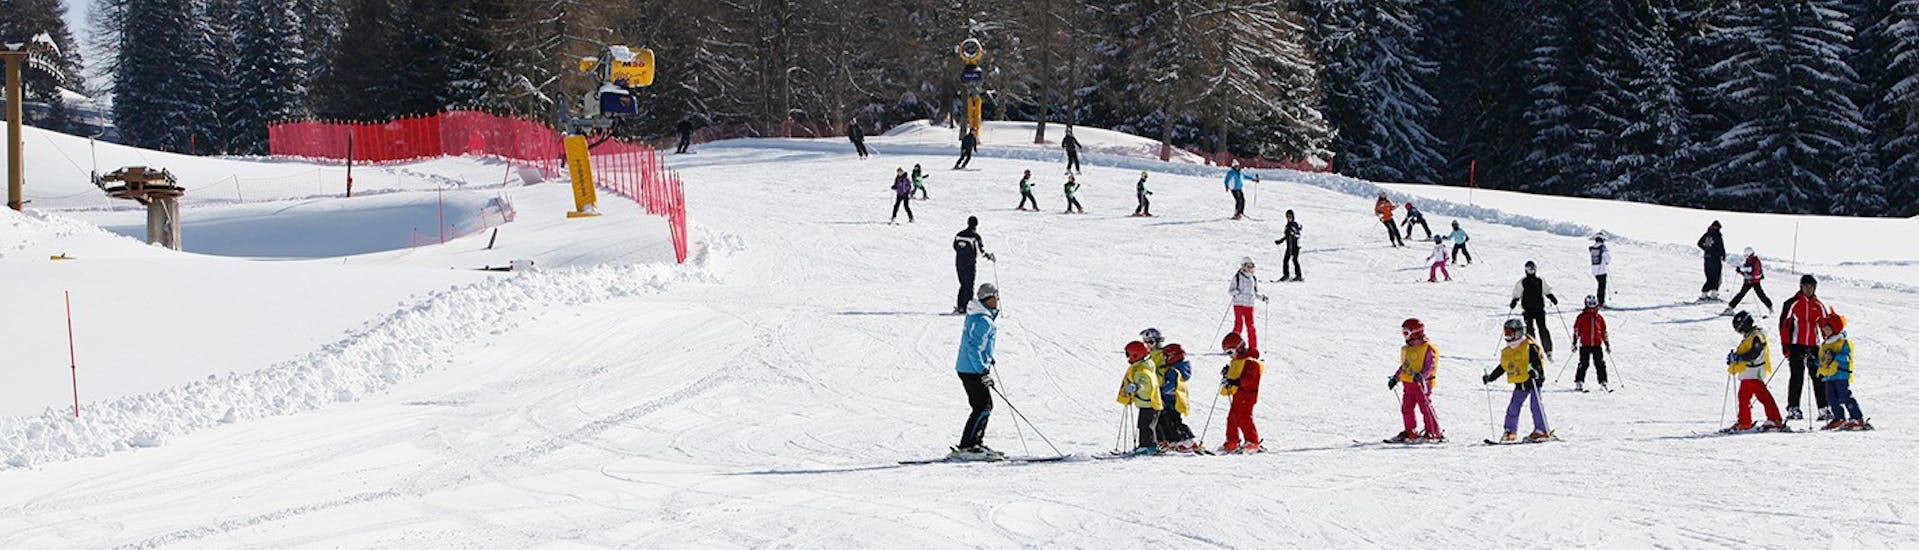 Pistes où se déroulent les leçons de ski pour enfants (6-14 ans) pour tous les niveaux avec Scuola Italiana Sci Folgaria-Fondo Grande.